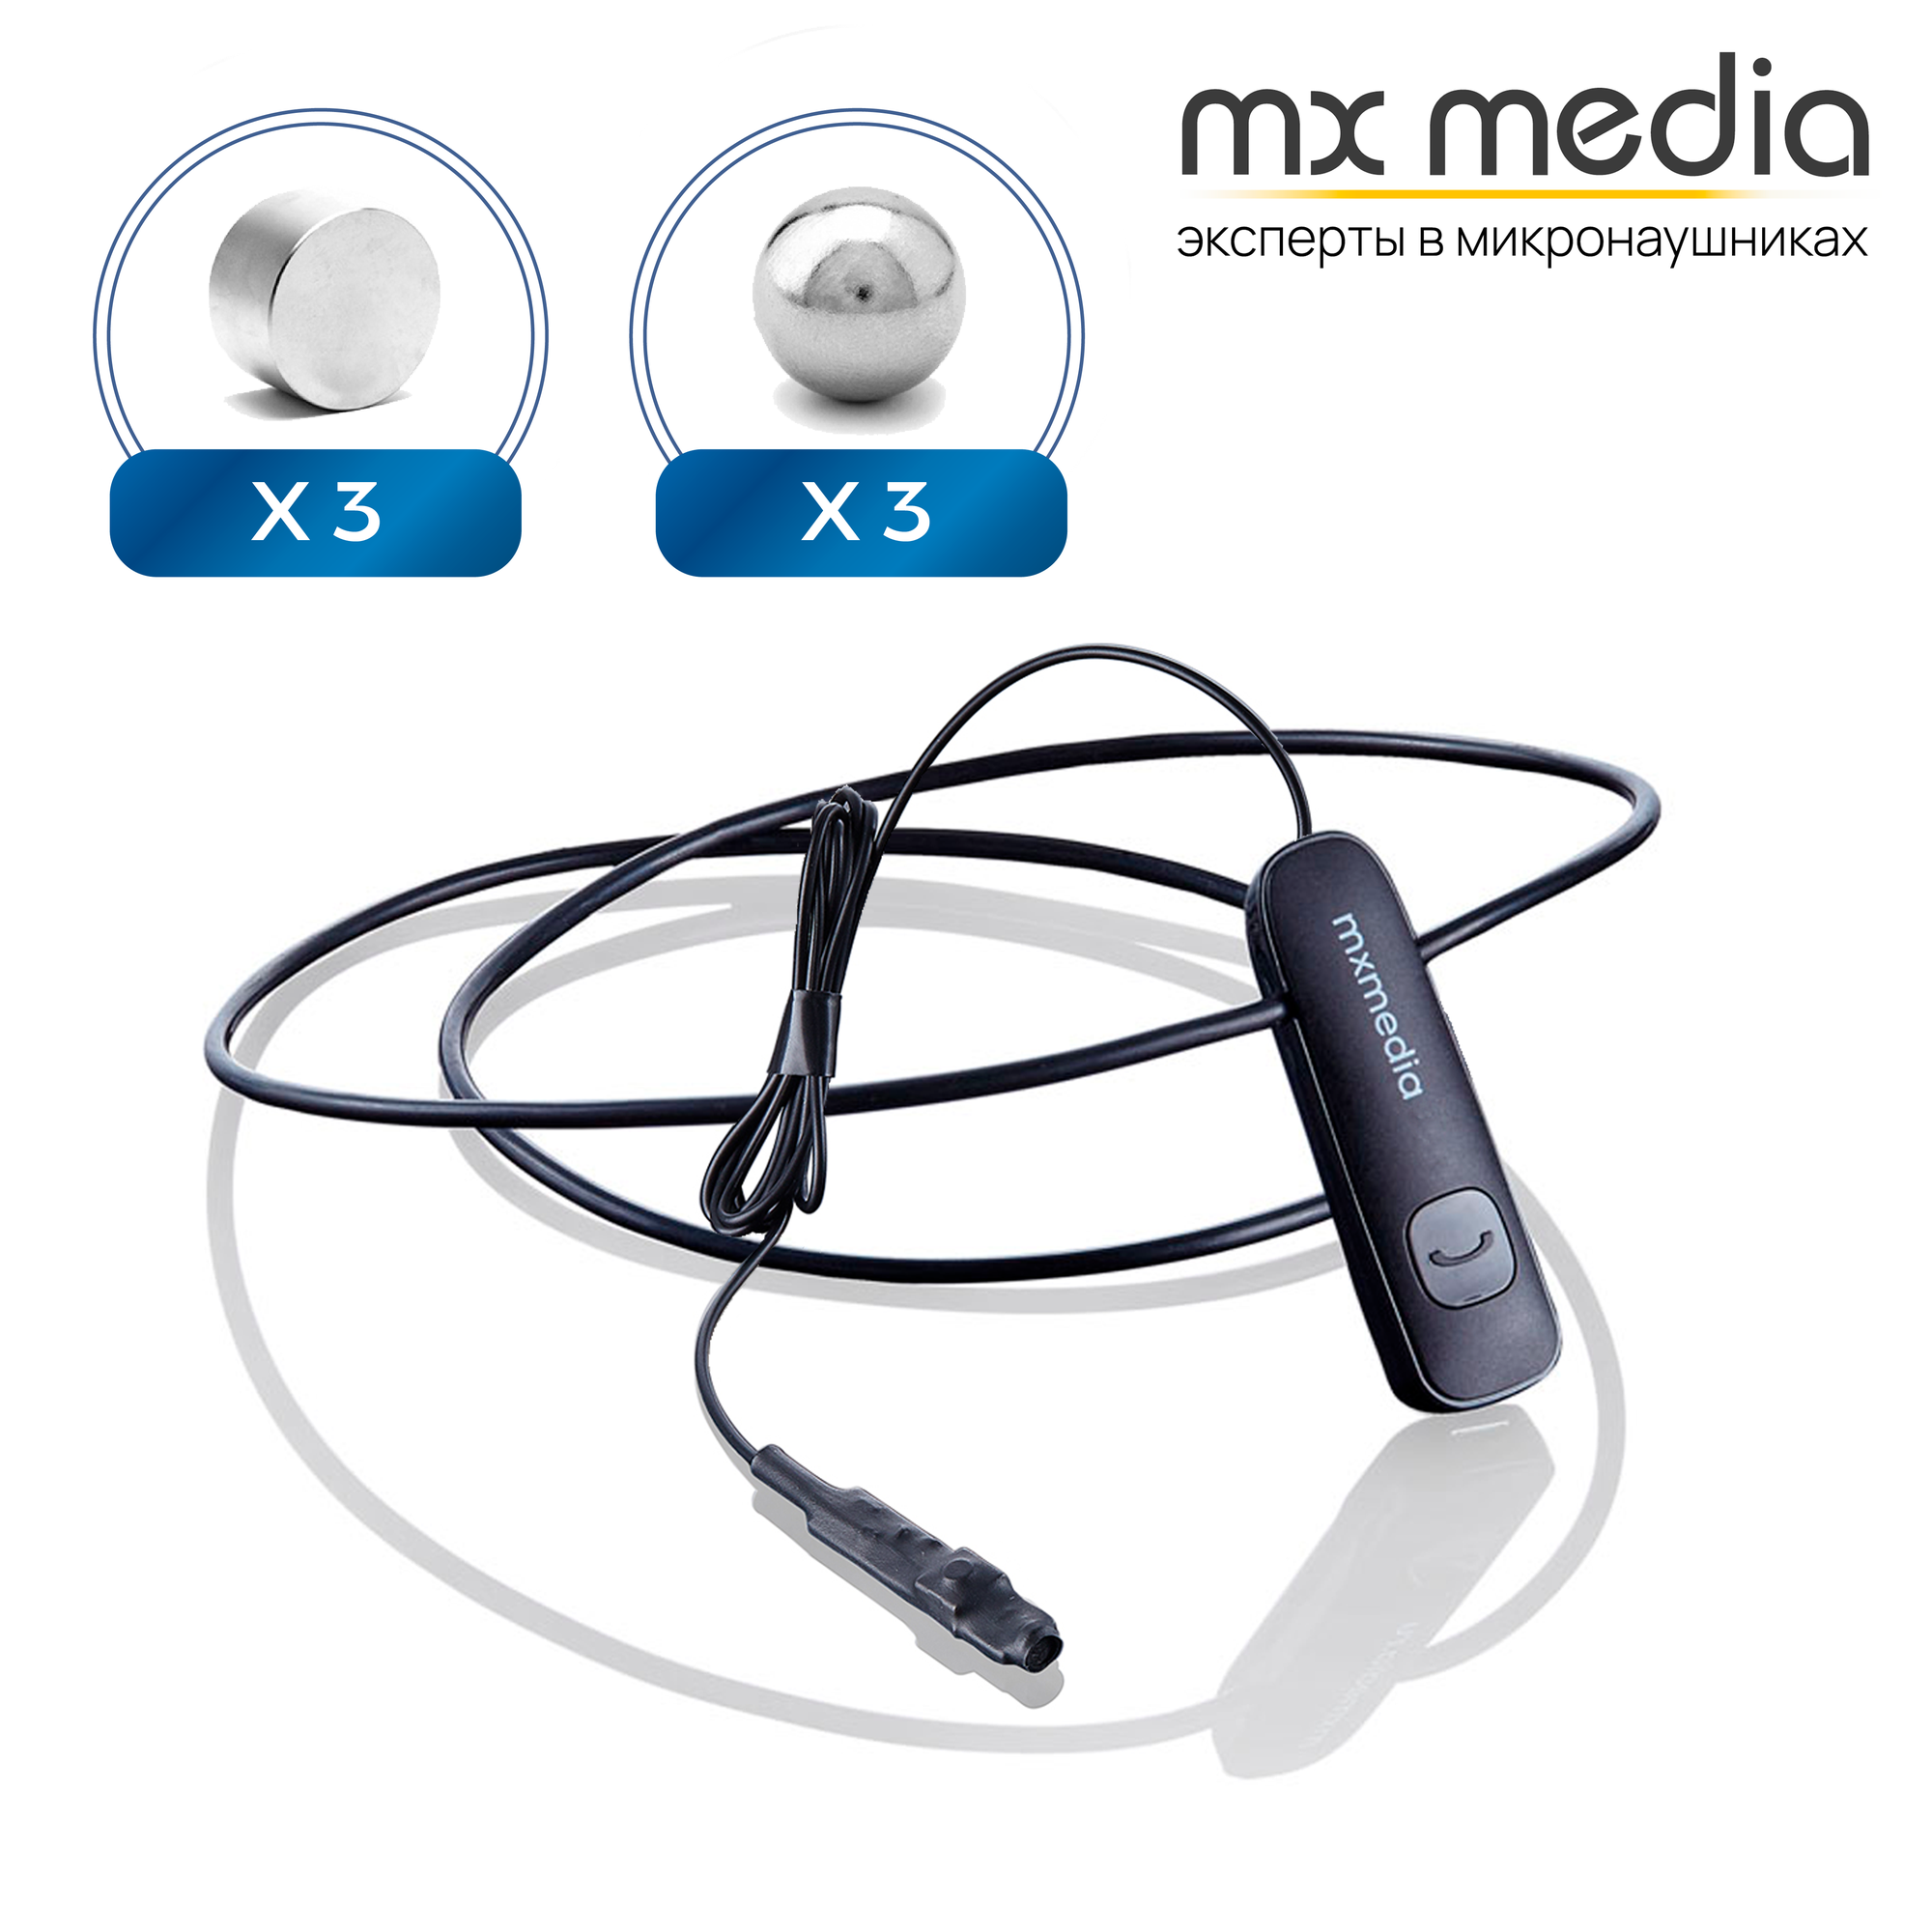 Микронаушник Mxmedia магнитный Magnet Bluetooth с выведенным микрофоном и кнопкой пищалкой